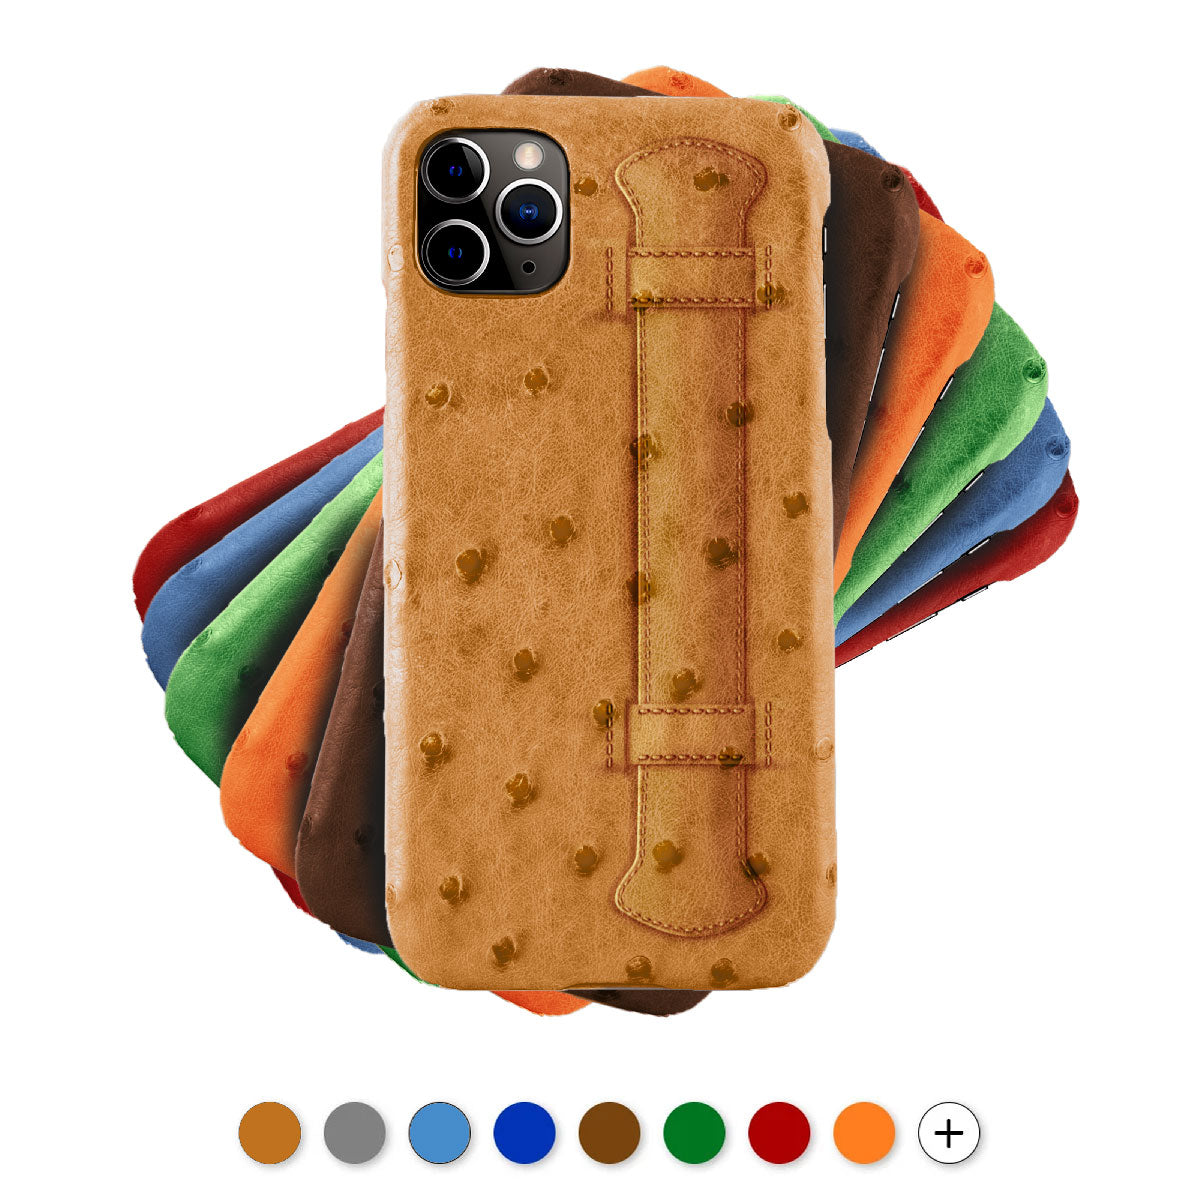 Coque cuir " Strap case "pour iPhone 12 et 11 ( Pro / Max / Mini ) - Autruche , Marron , Orange , Bleu , Rouge , Gris...